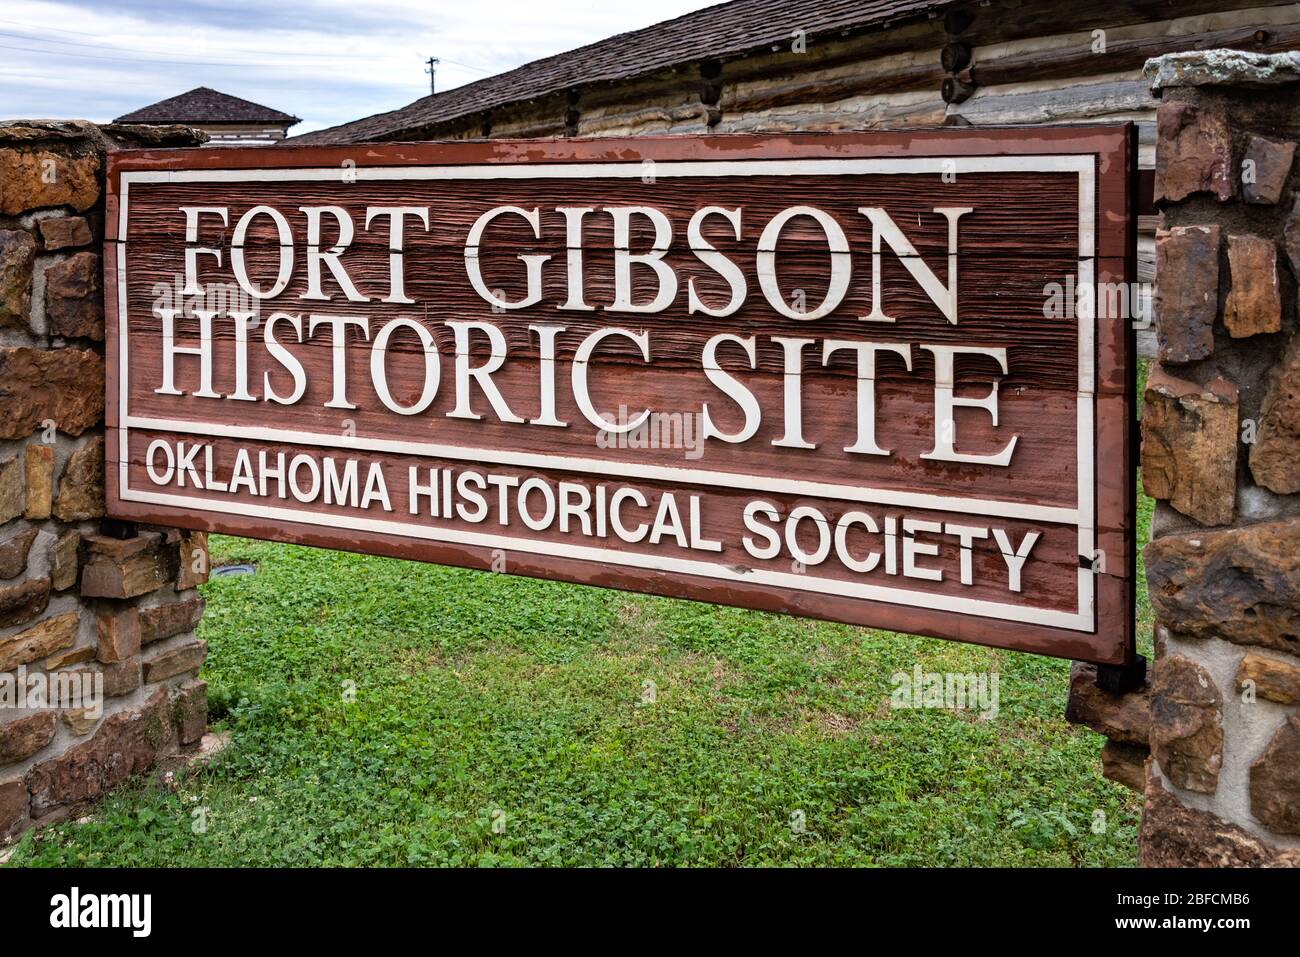 Site historique de fort Gibson, un poste militaire historique en Oklahoma qui a gardé la frontière américaine dans le territoire indien de 1824 à 1888. (ÉTATS-UNIS) Banque D'Images